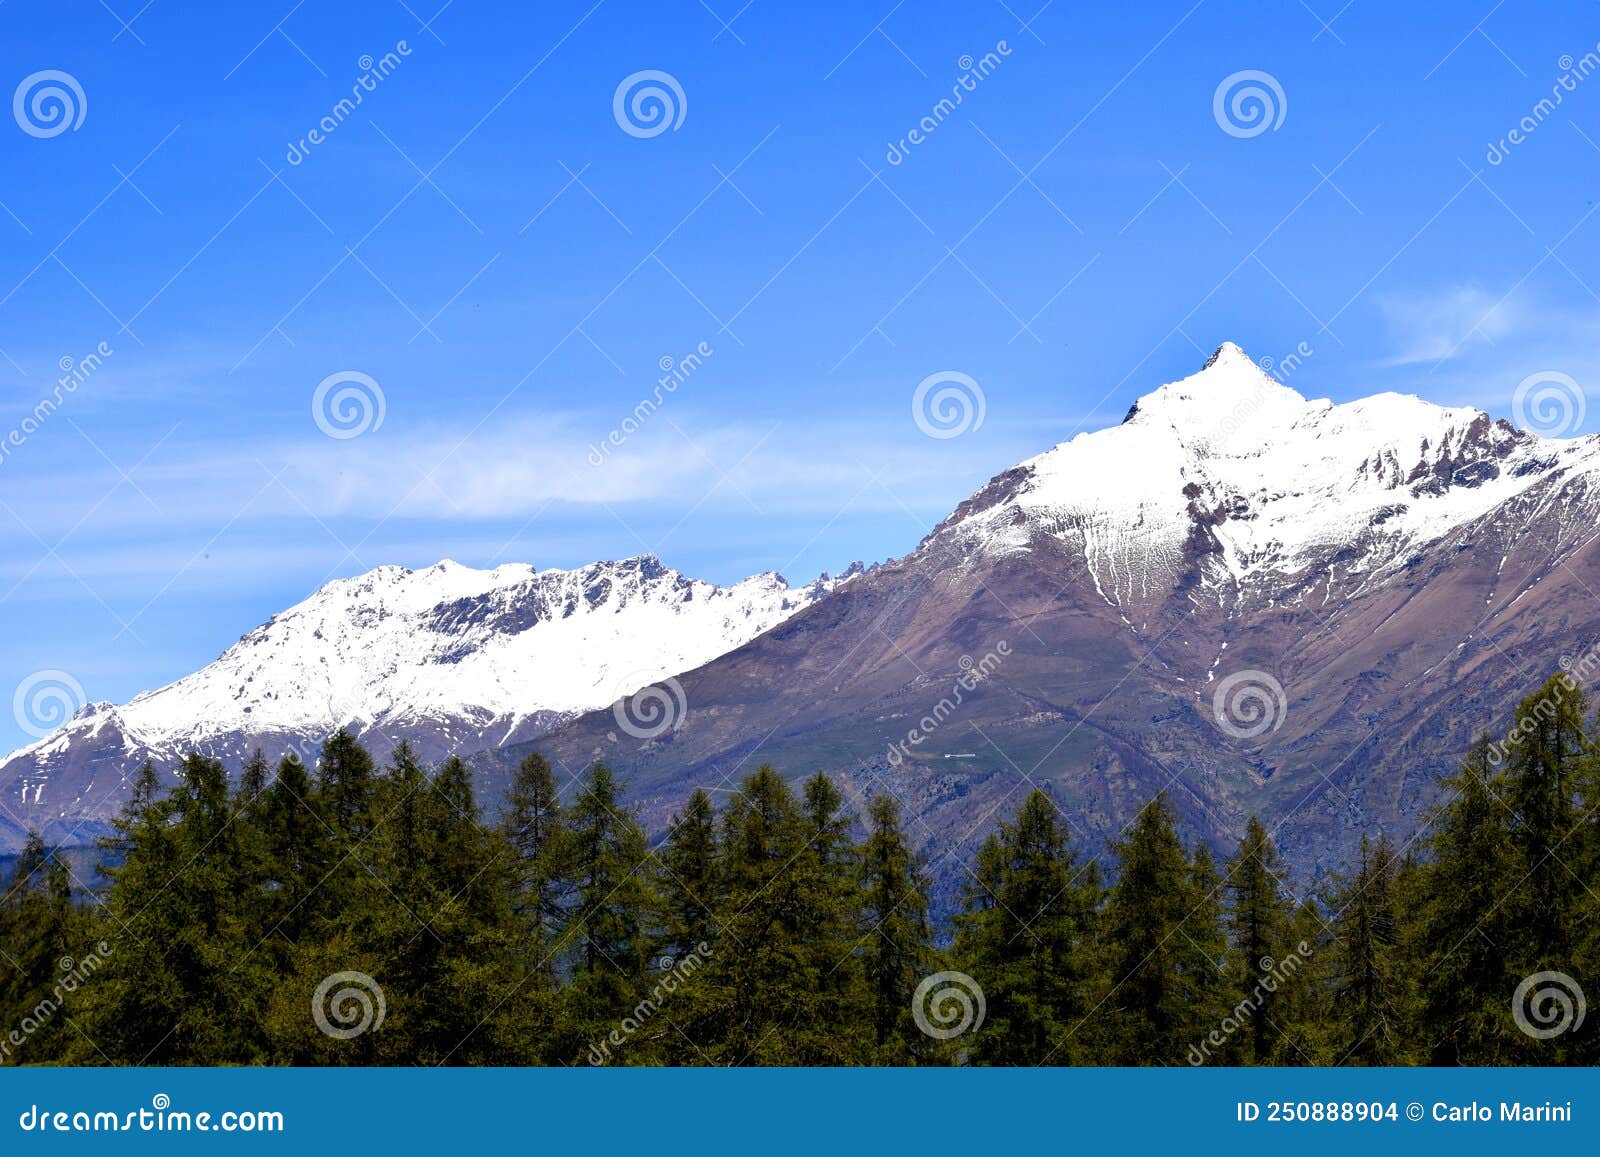 panorama delle alpi, montagne innevate con ghiacciai